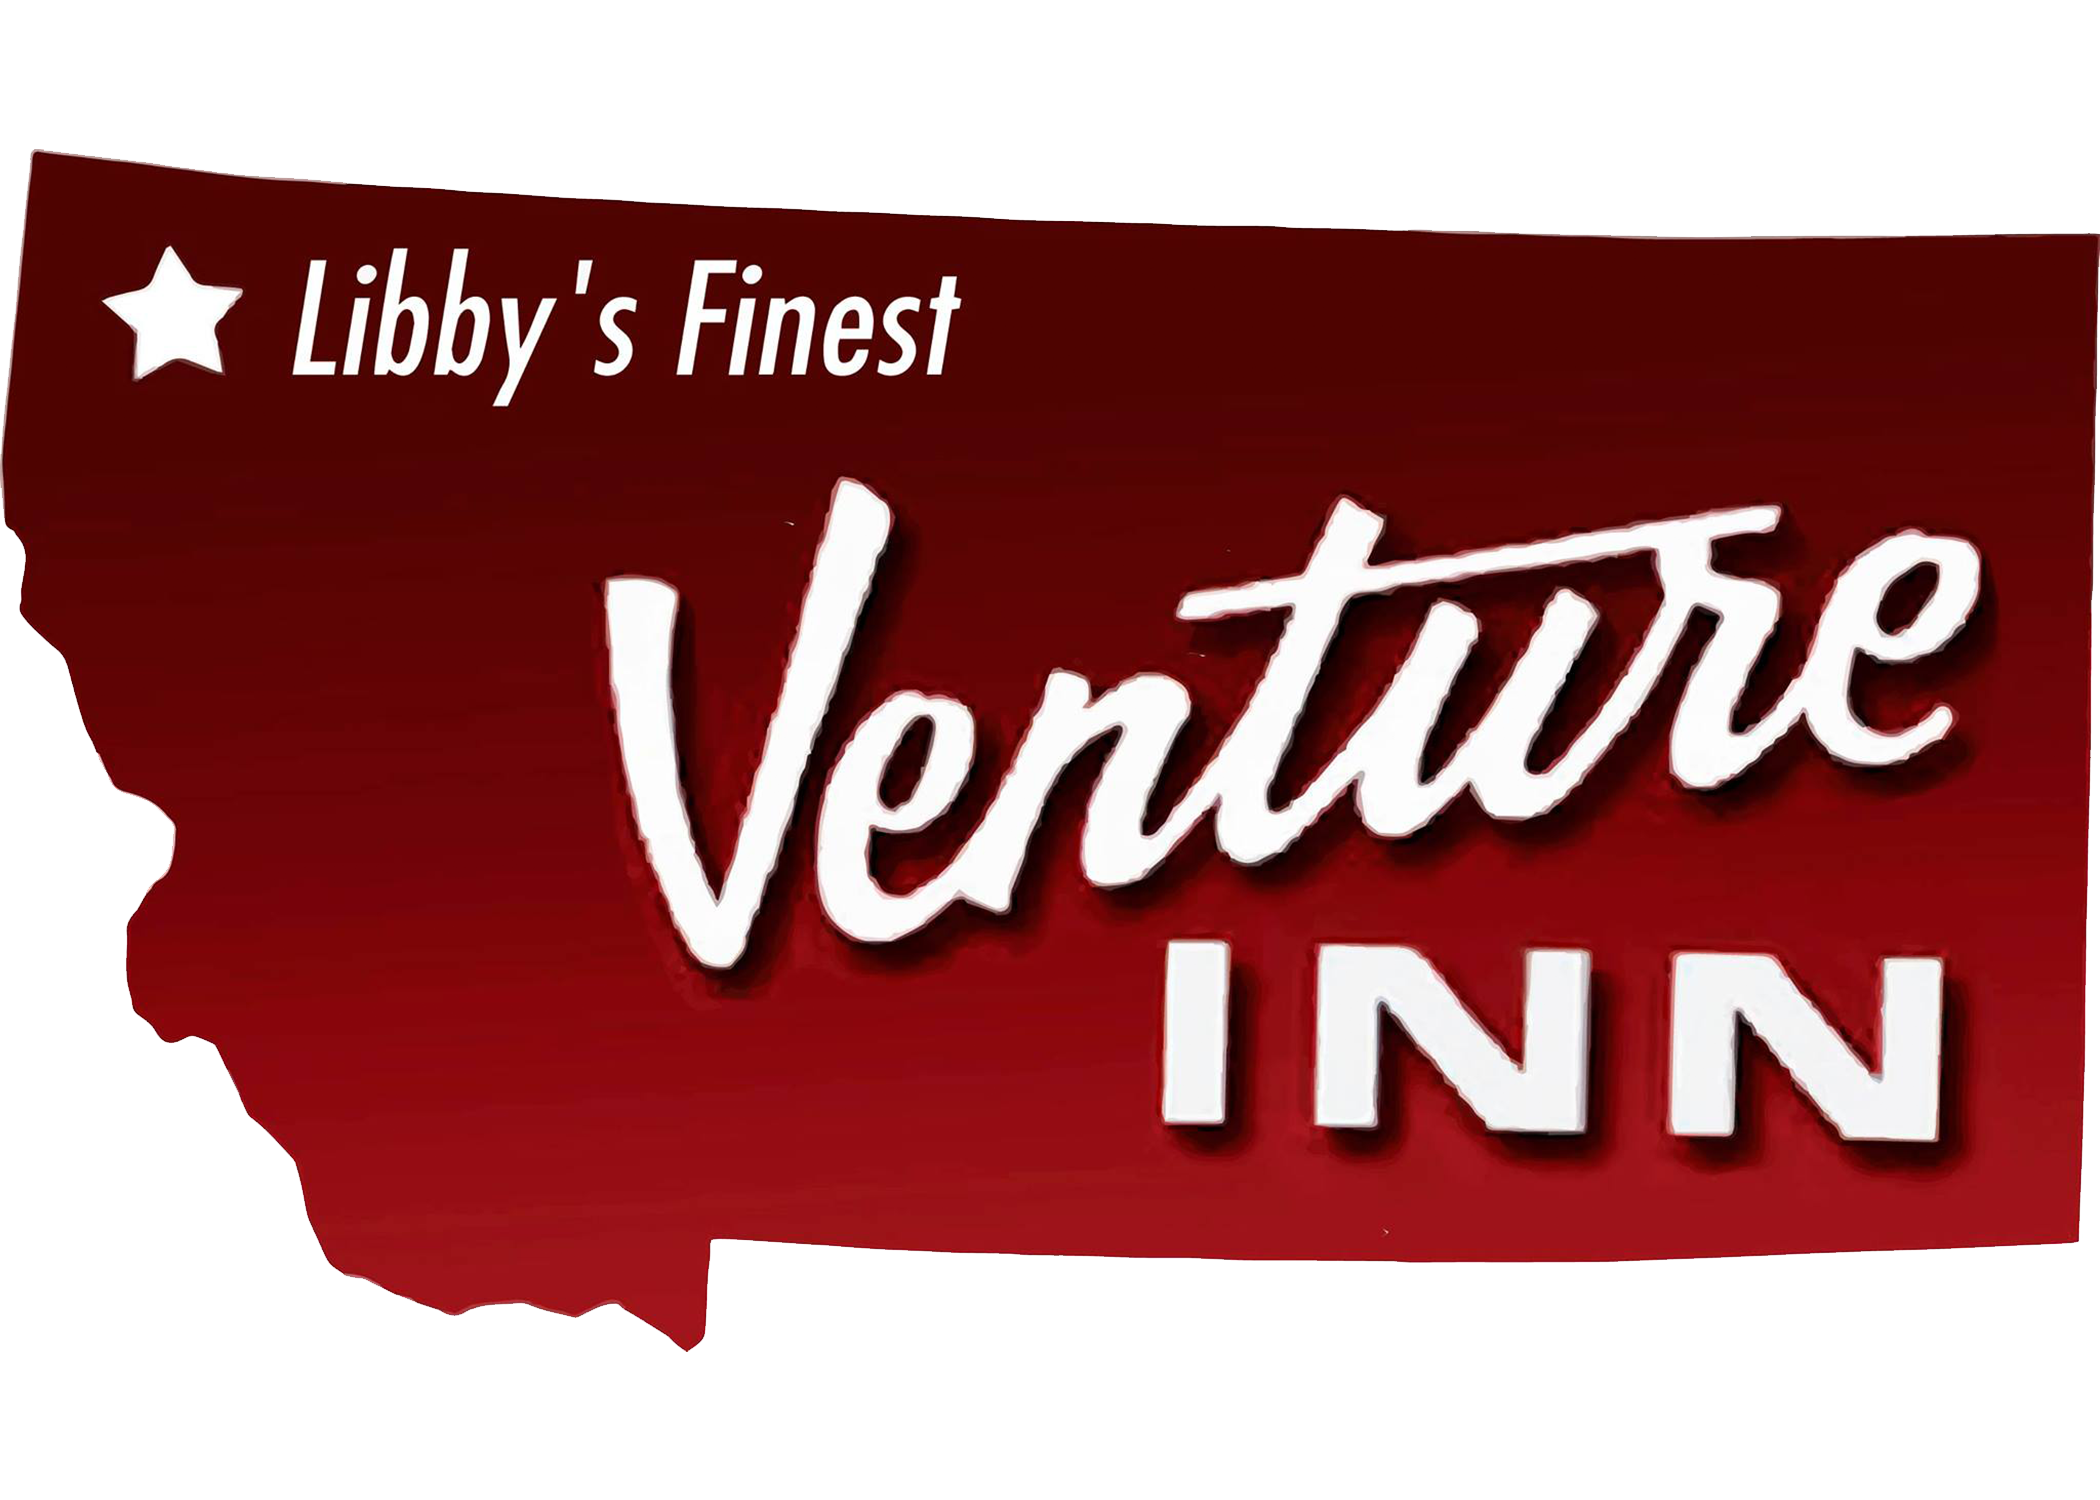 The Venture Inn